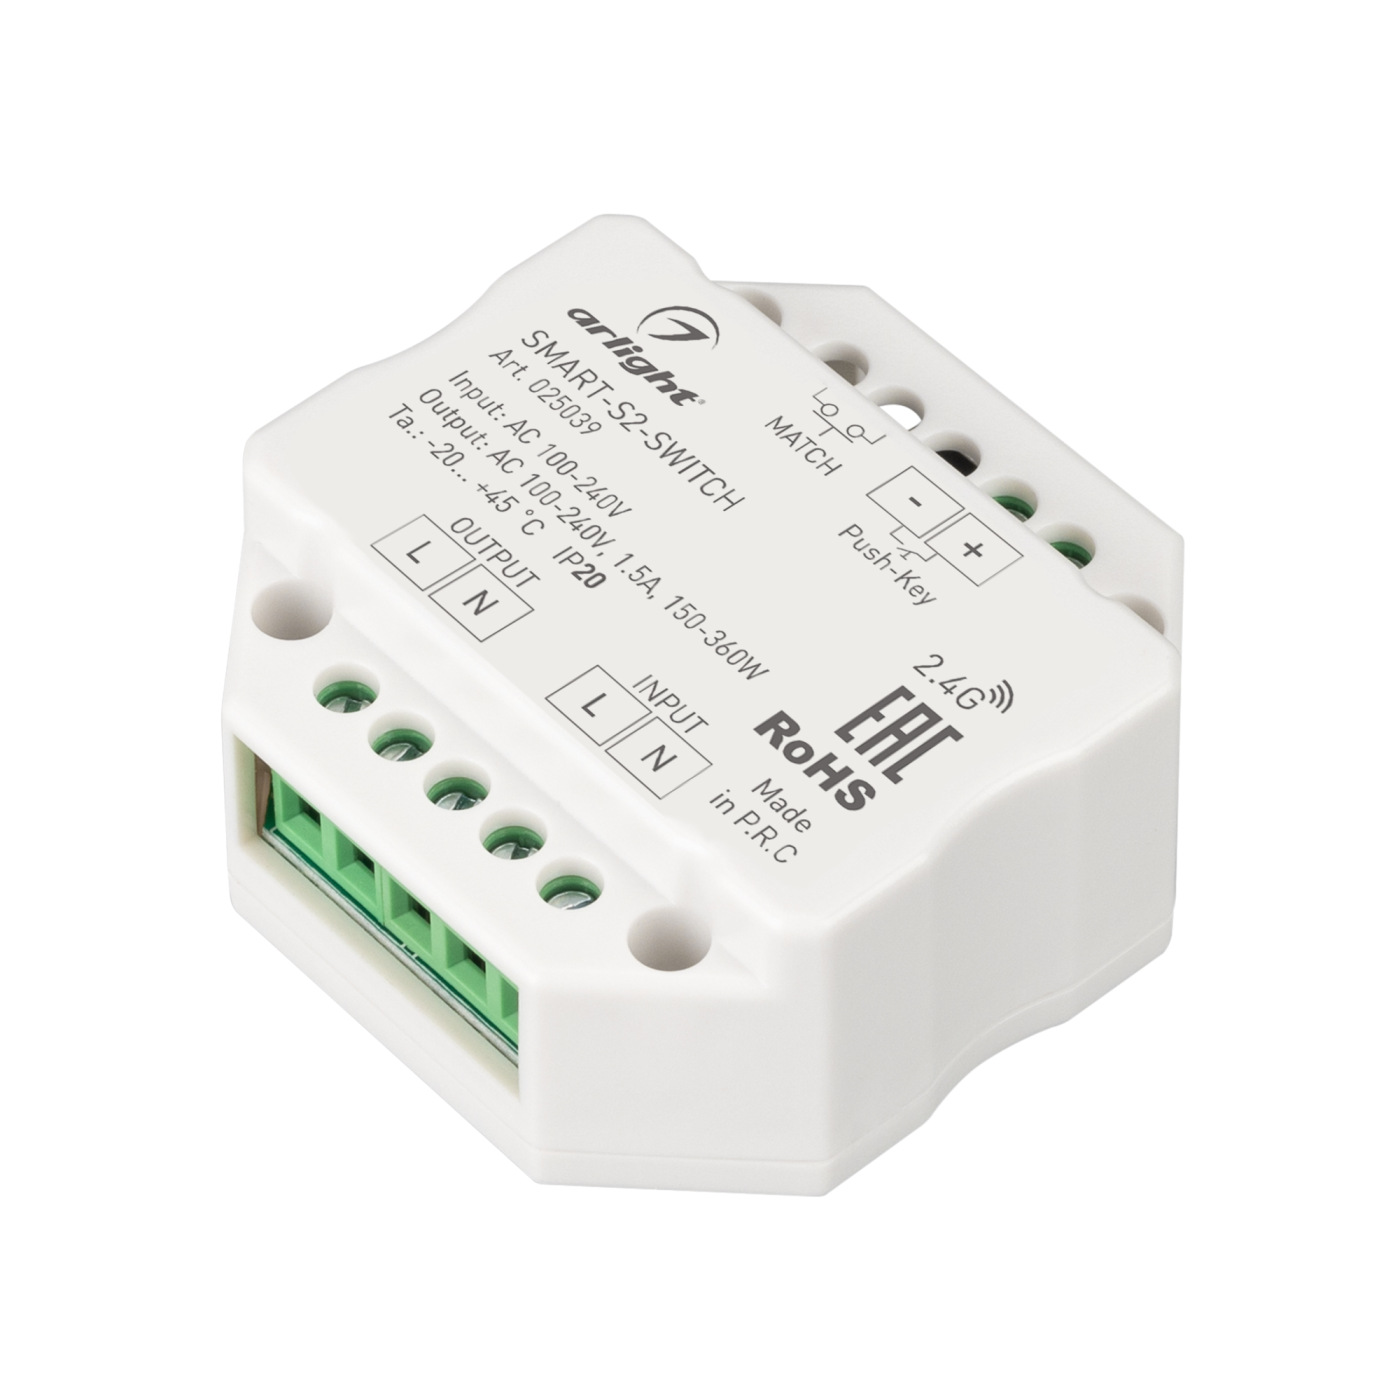 Контроллер-выключатель SMART-S2-SWITCH (230V, 1.5A, 2.4G) (Arlight, IP20 Пластик, 5 лет) выключатель скрытой установки одноклавишный 10 а пластик белый tdm electric лама sq1815 0001